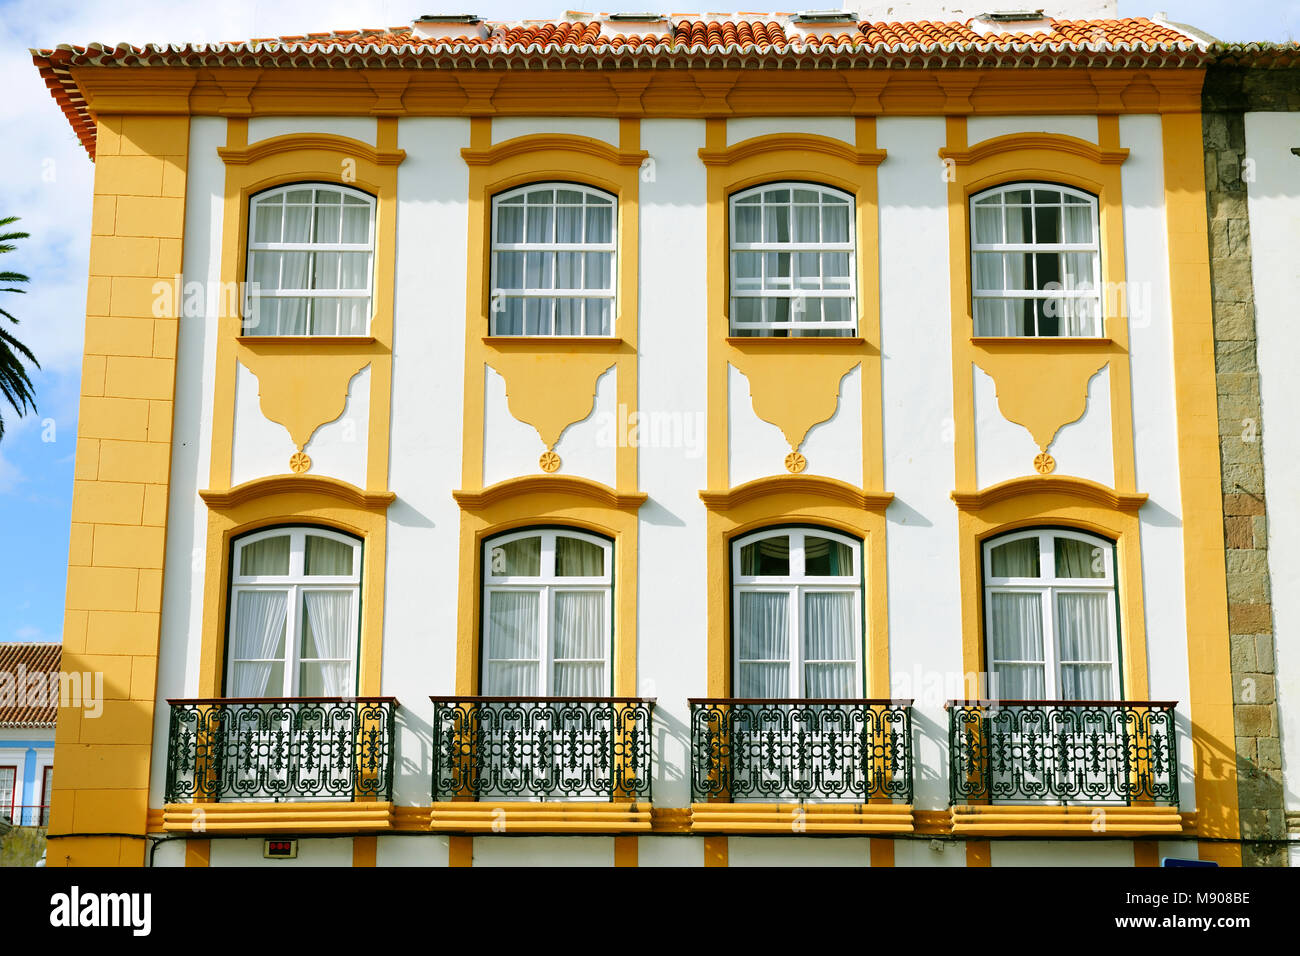 Détail d'une maison à Angra do Heroísmo, Site du patrimoine mondial de l'UNESCO. Terceira, Açores, Portugal Banque D'Images